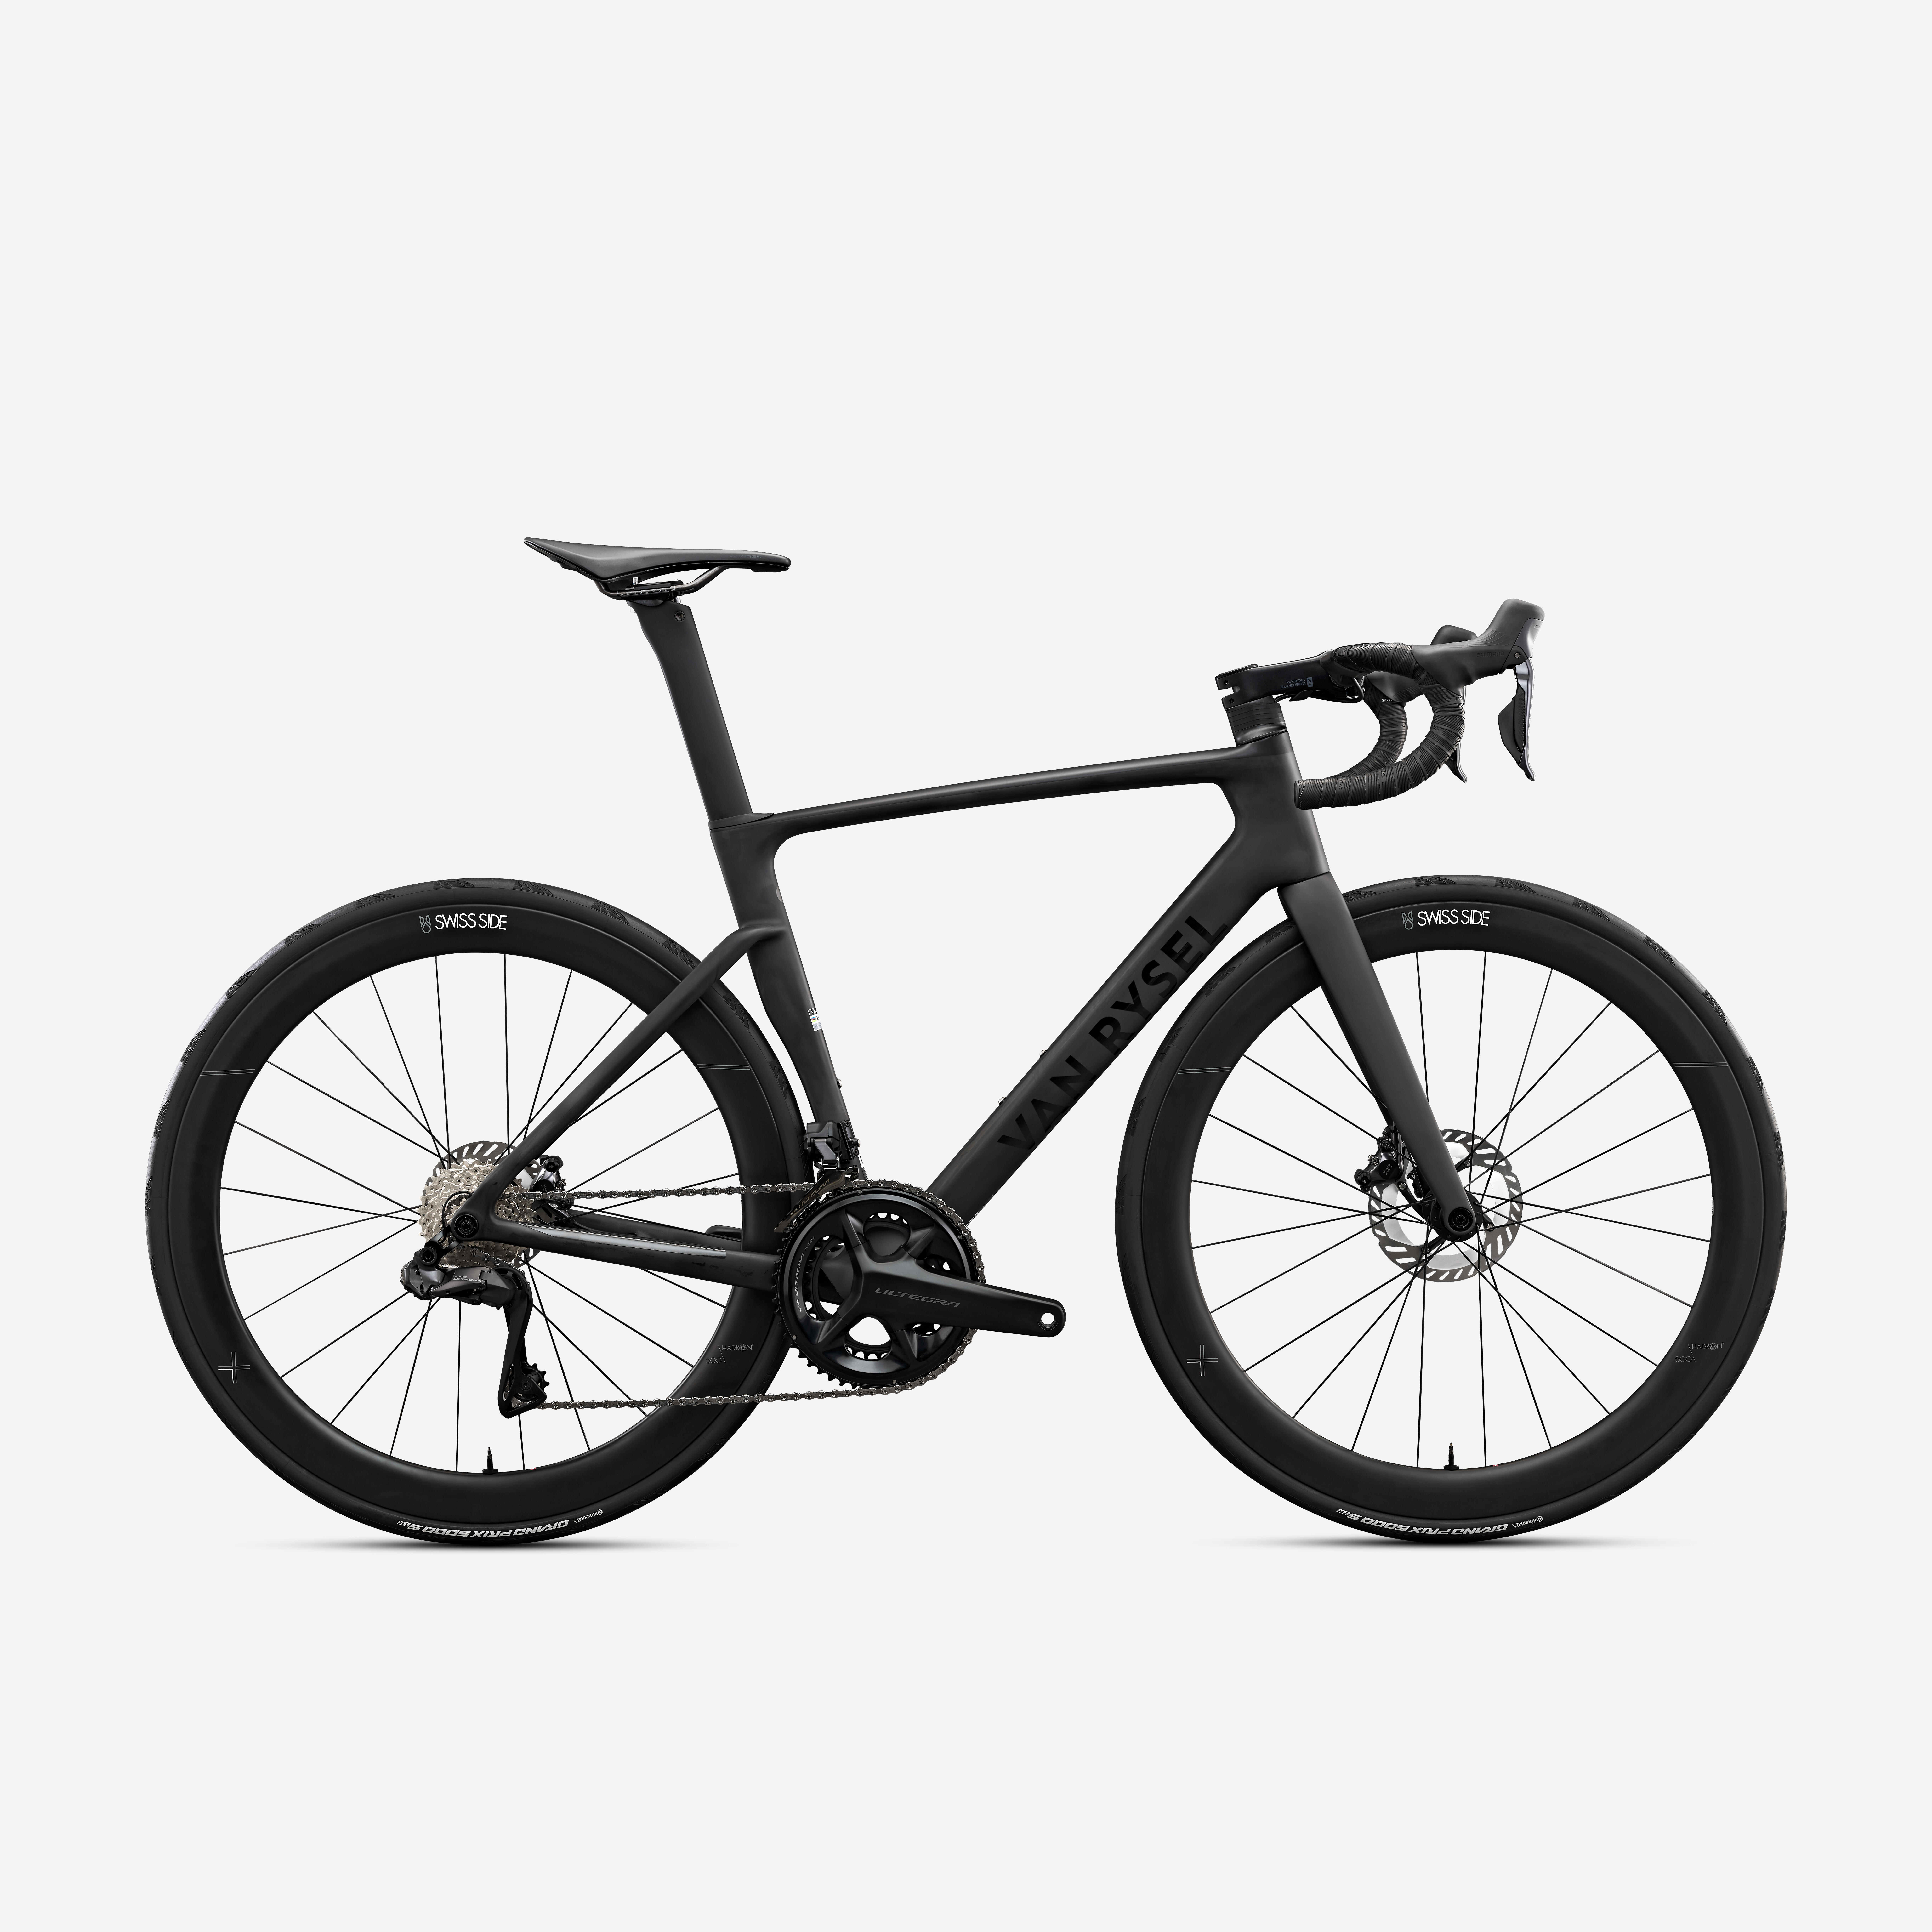 Van Rysel Road Bike Rcr Pro Shimano Ultegra Di2 With Power Sensor - Raw Carbon